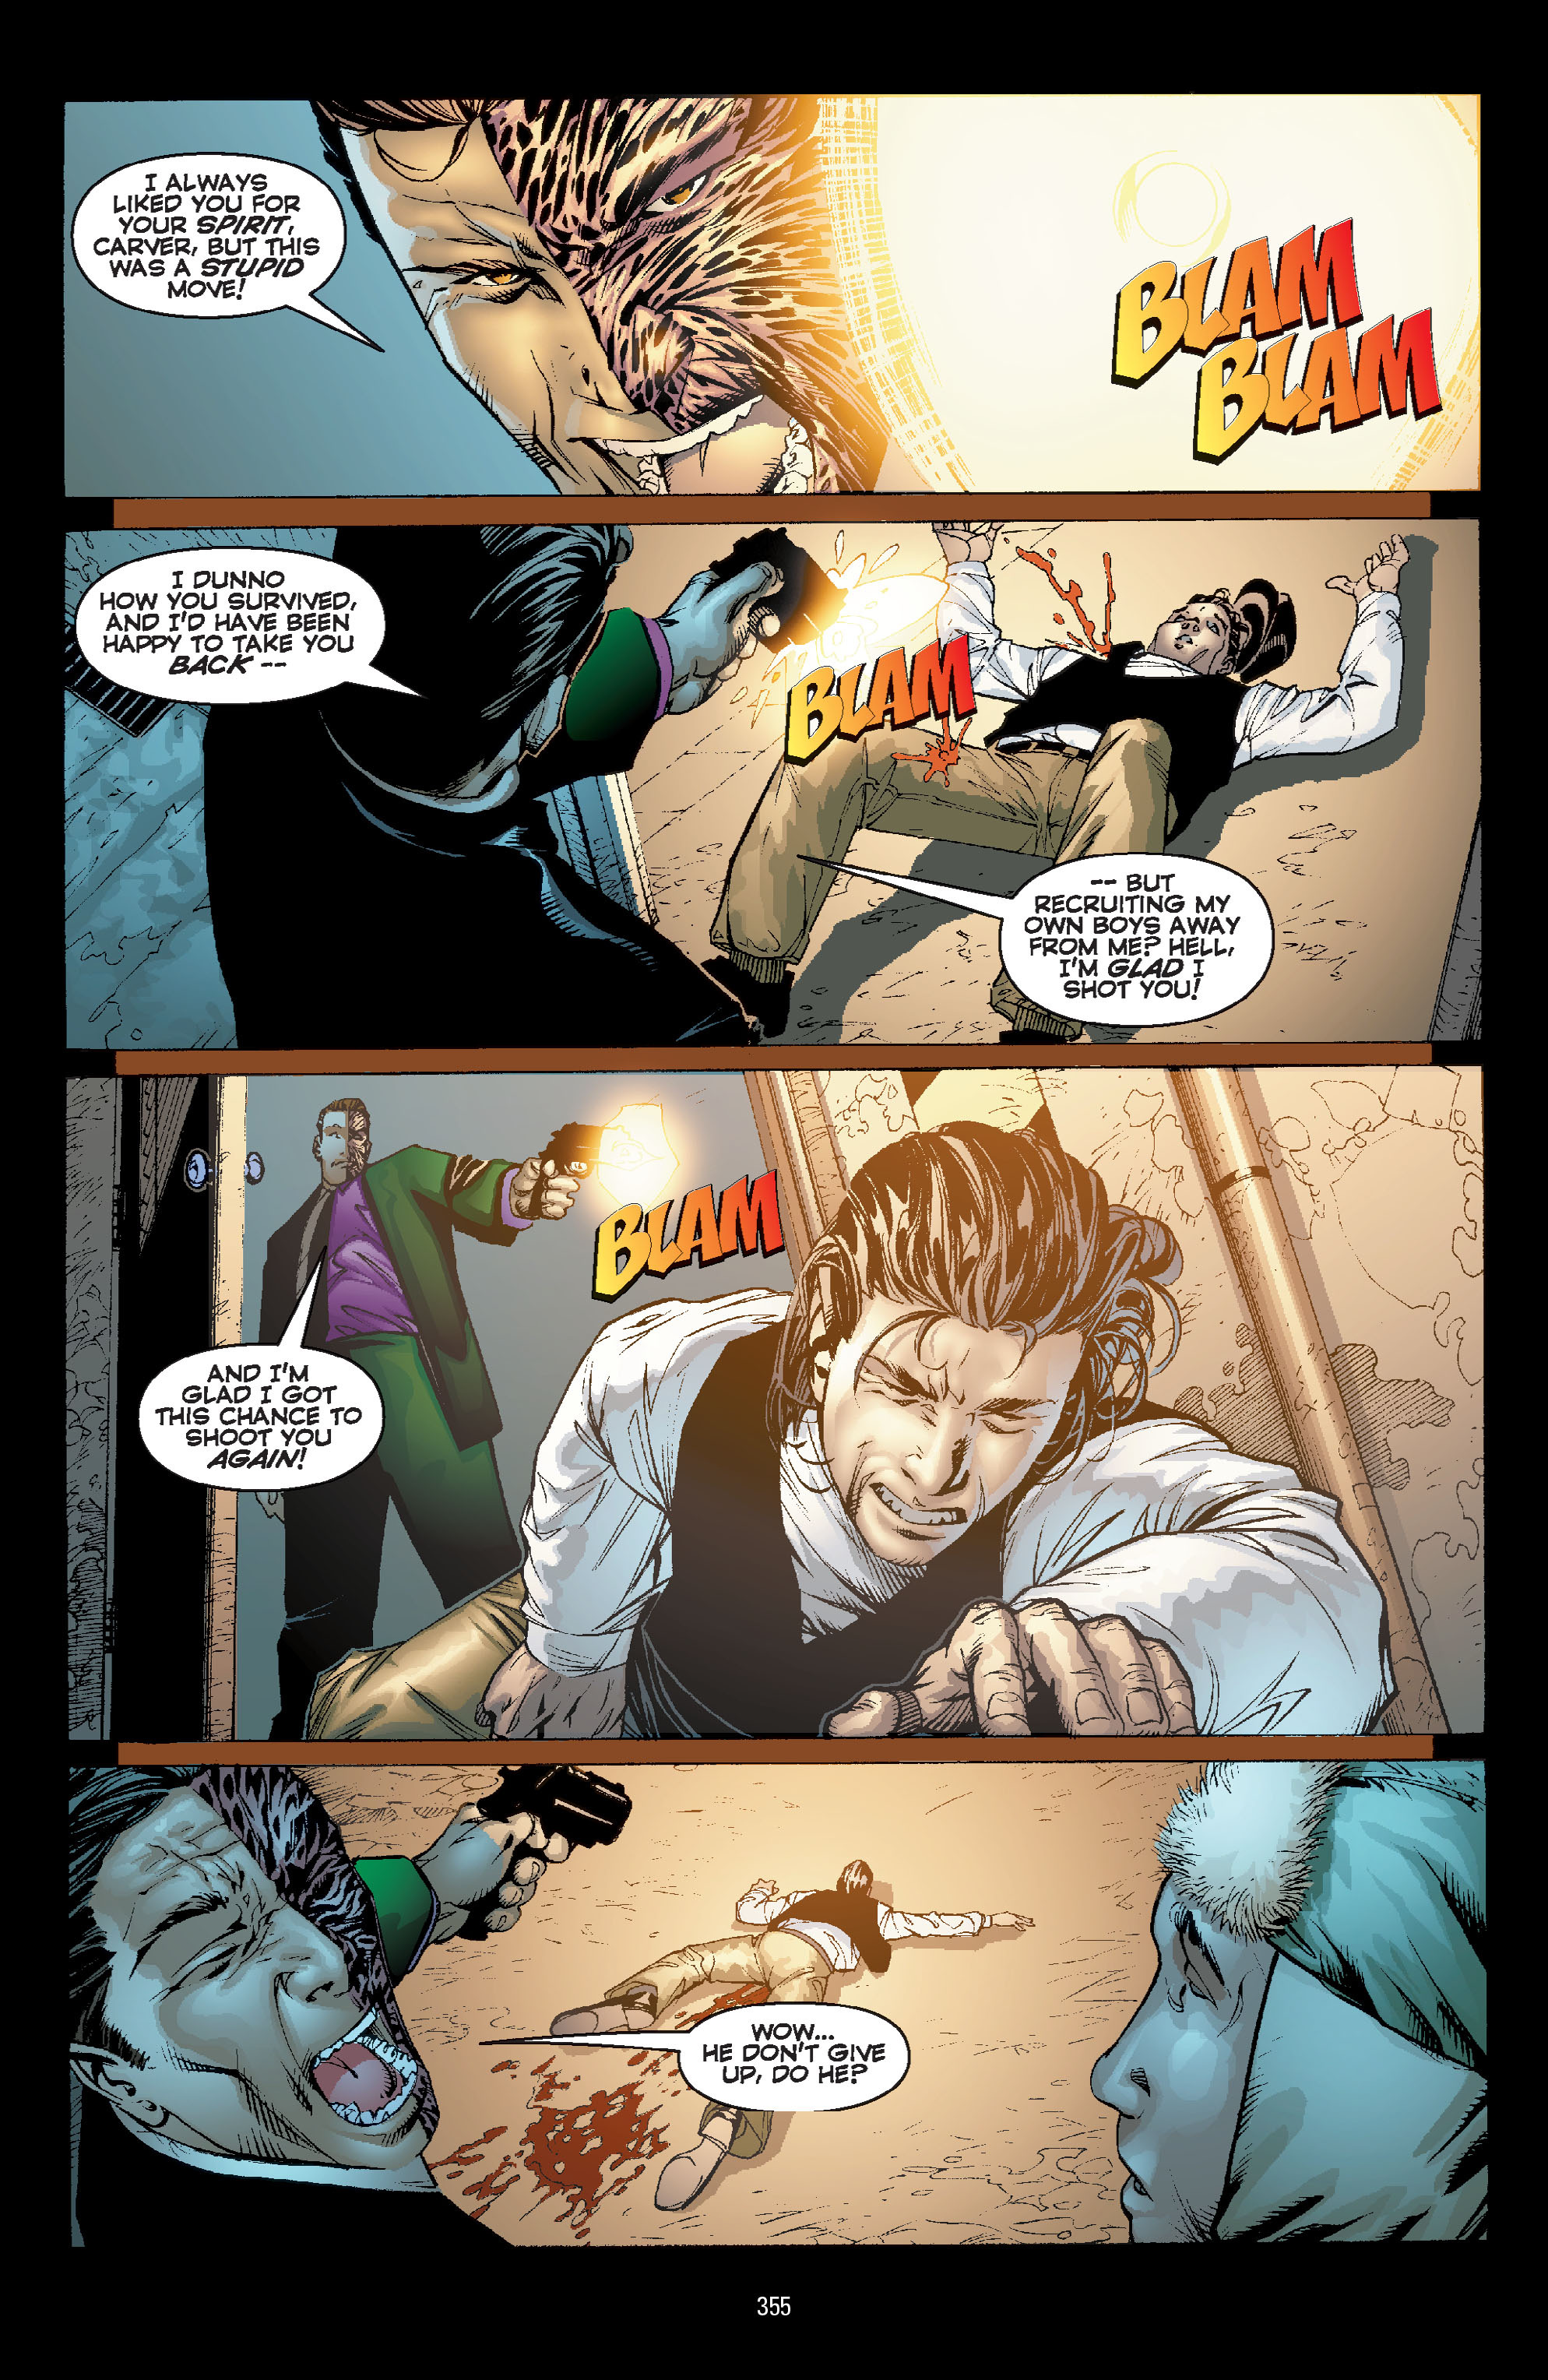 DC Comics/Dark Horse Comics: Justice League Full #1 - English 345